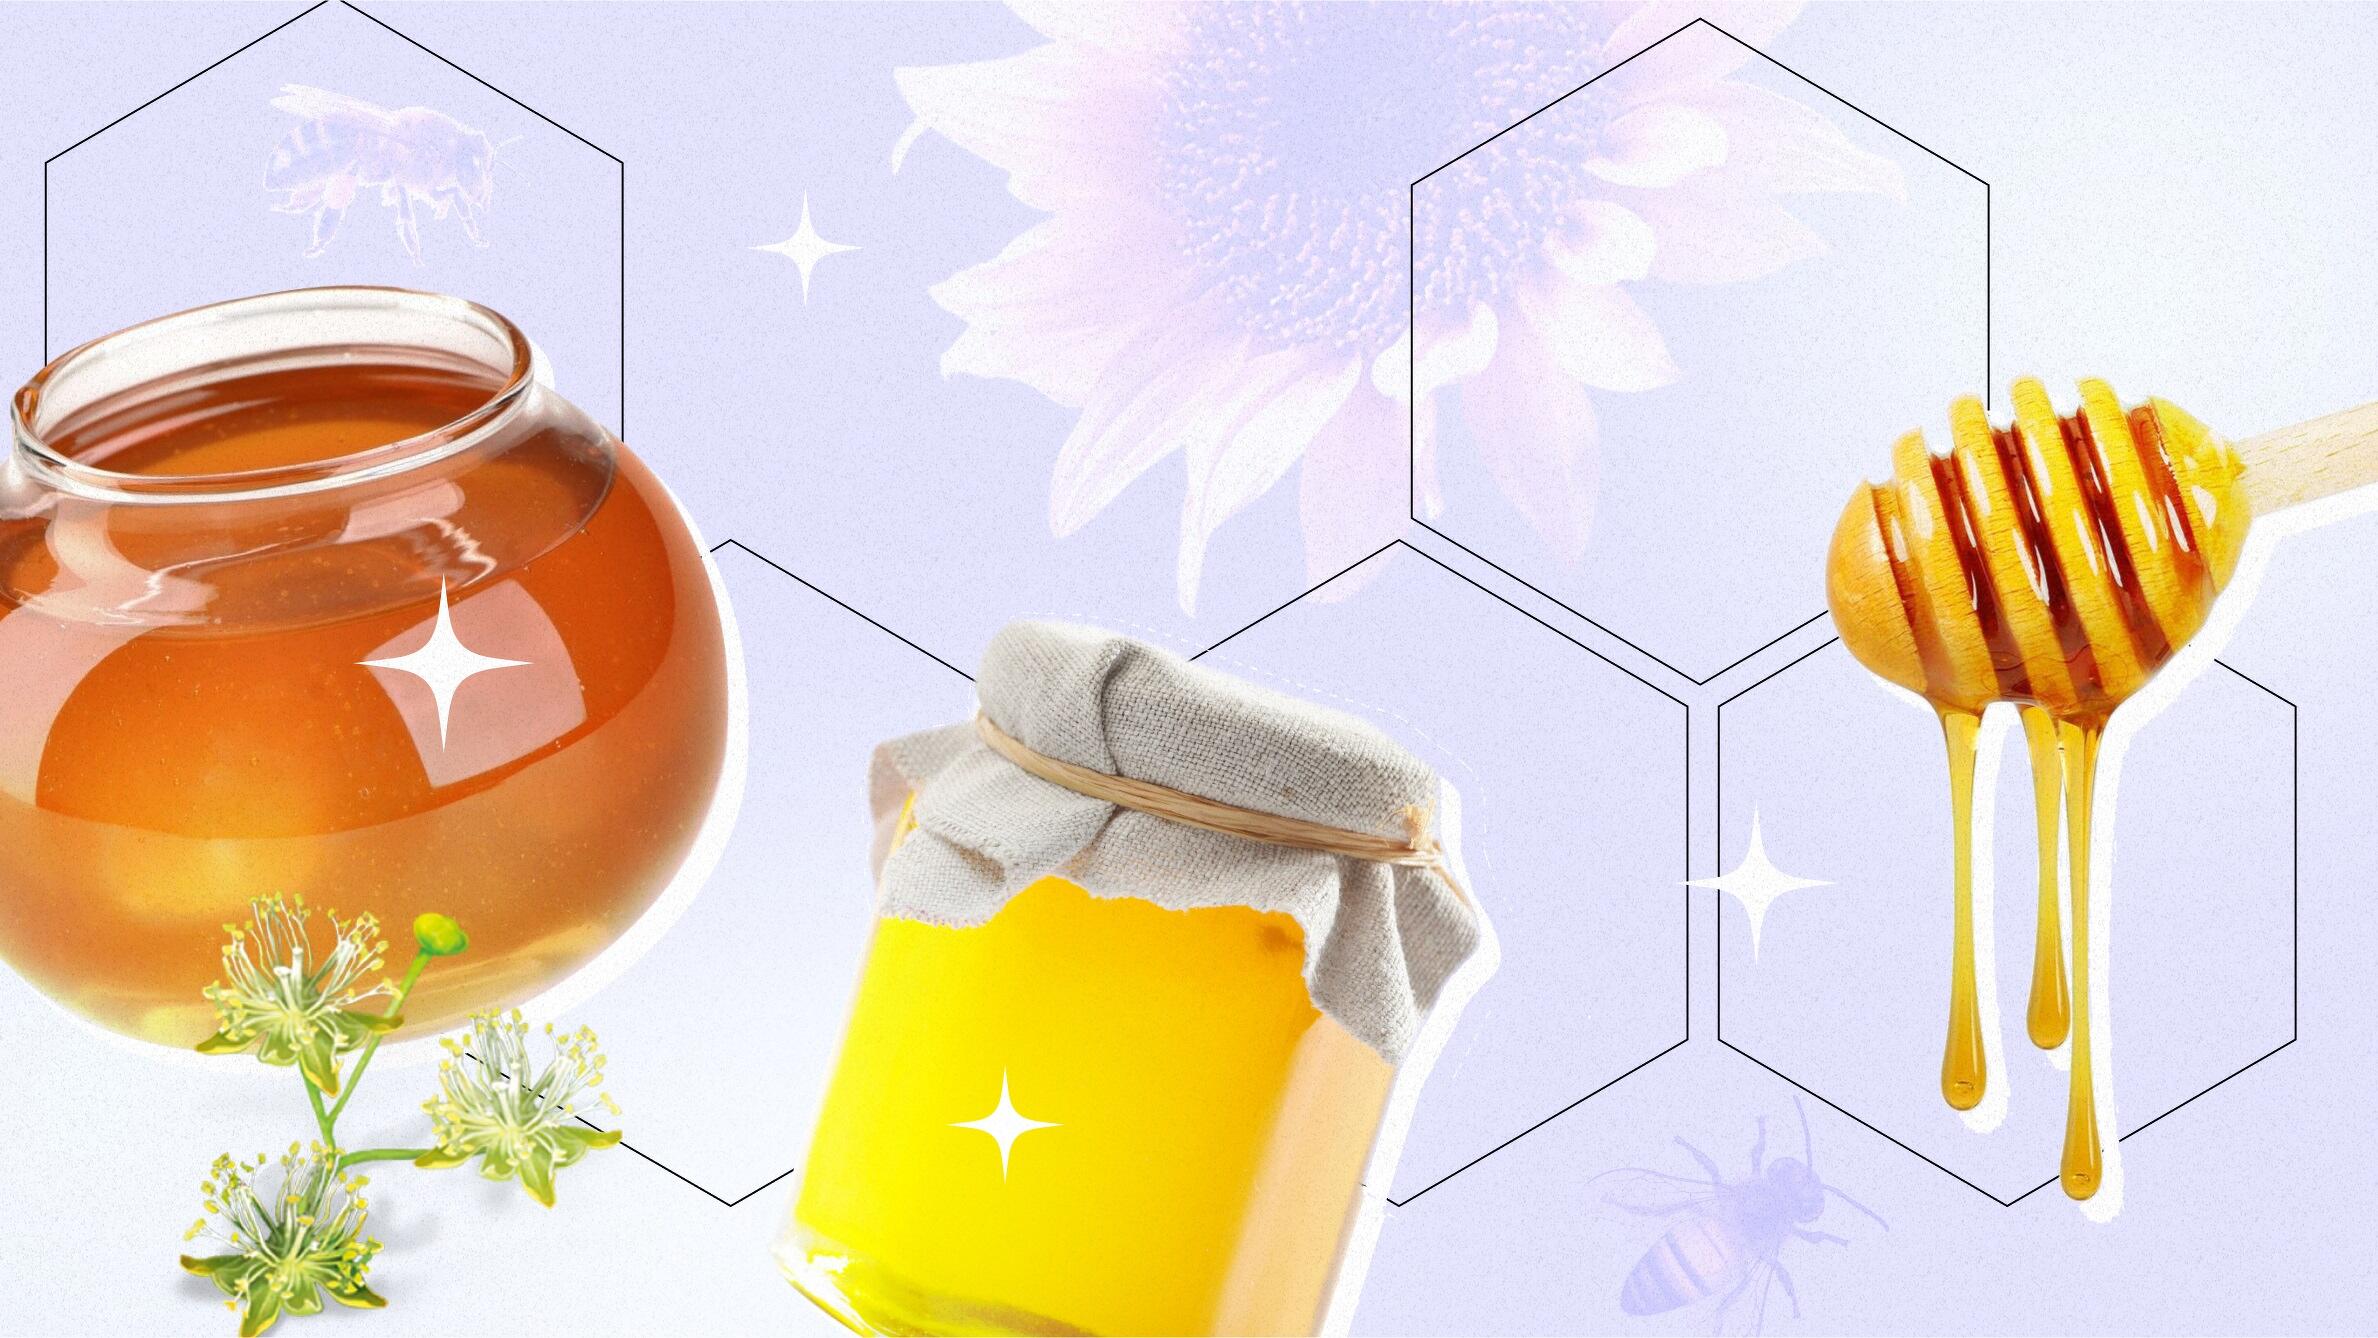 Каштановый мёд, вкус, цвет, свойства и применение